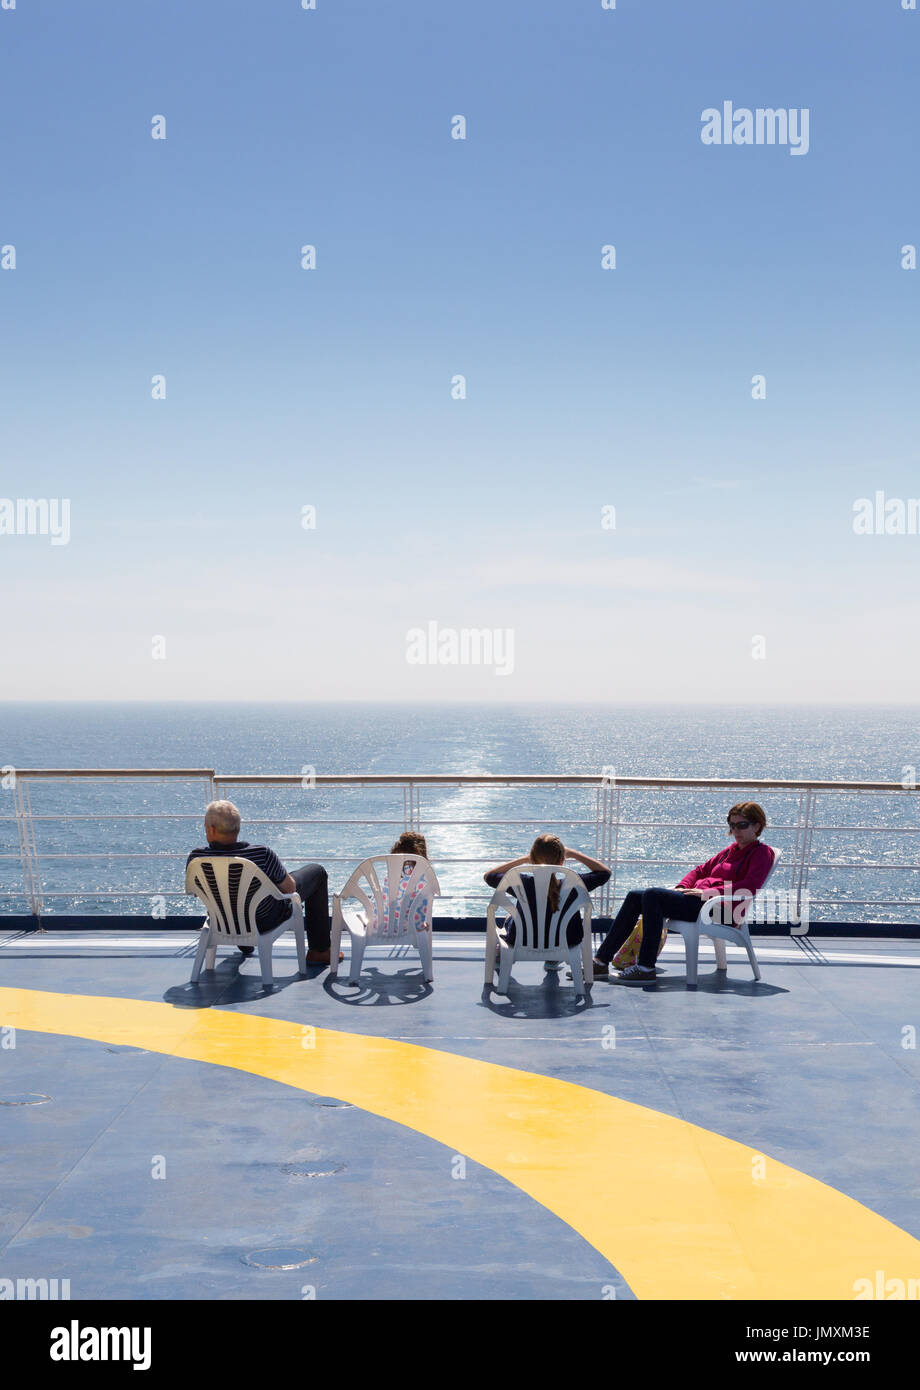 La famiglia che va in vacanza su un canale trasversale traghetti Brittany traghetto "Bretagne", Brittany Ferries, da Portsmouth Regno Unito a St Malo Francia, Europa Foto Stock